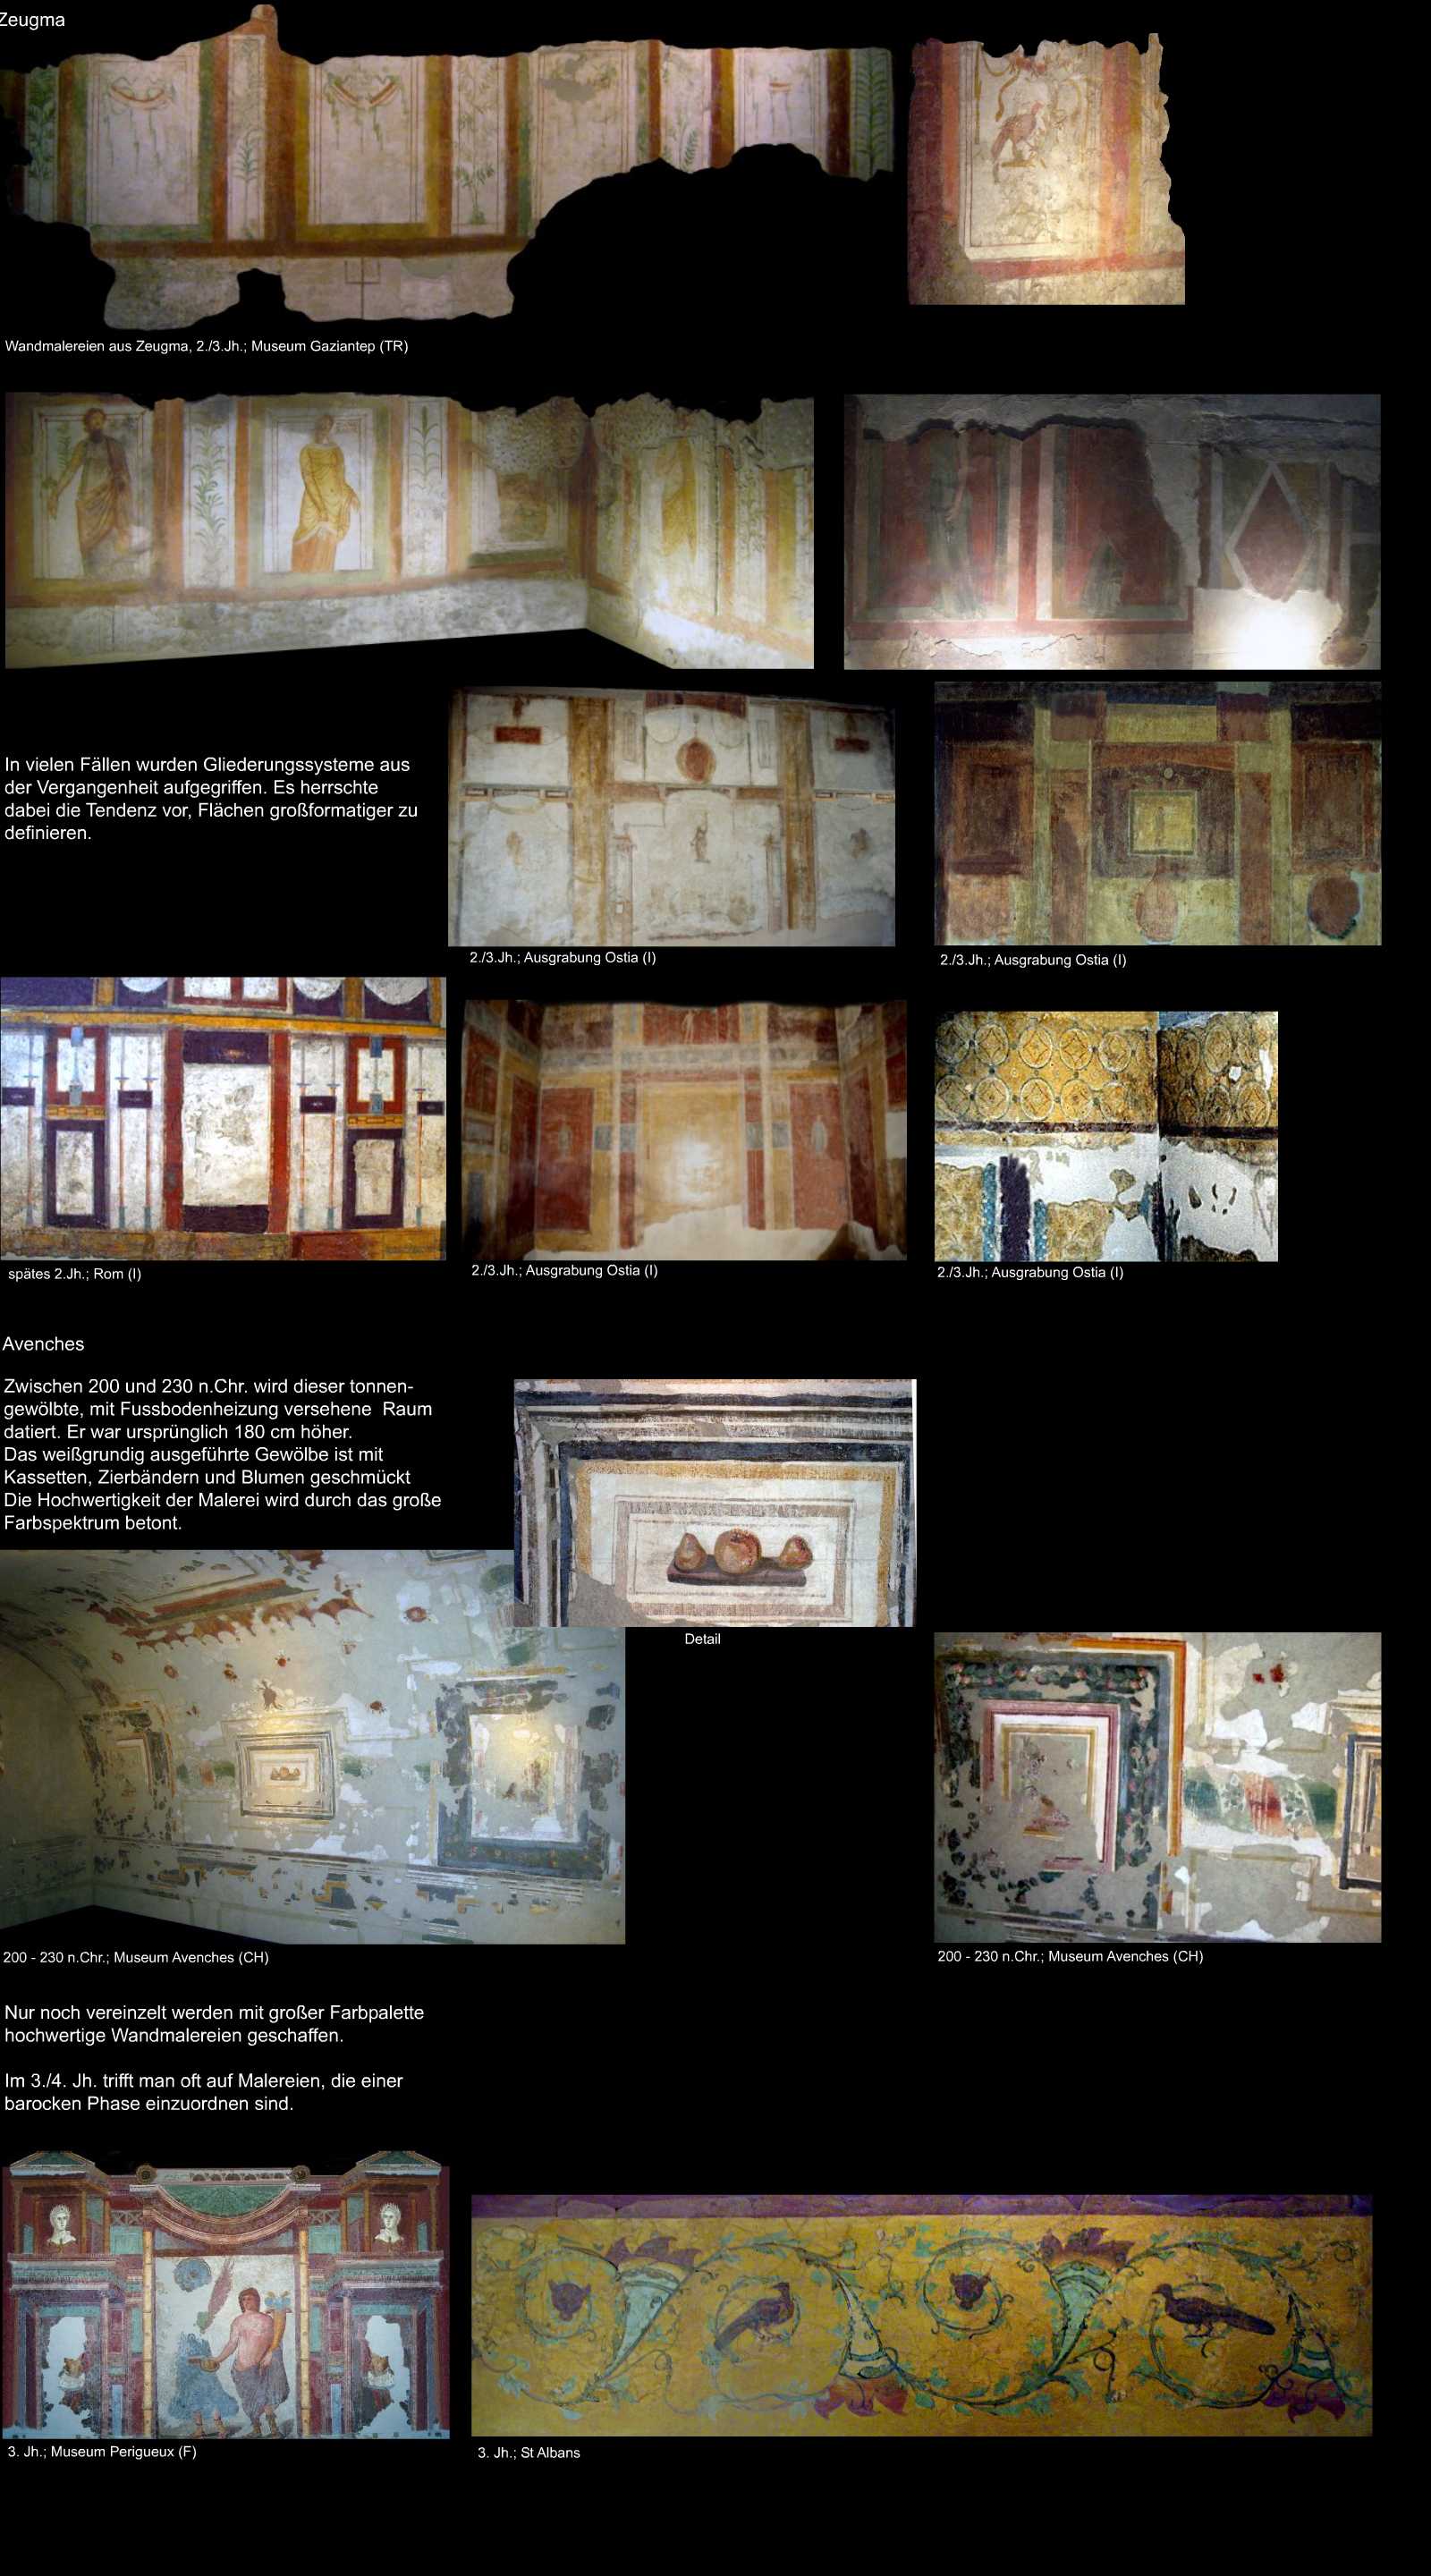 späte römische Wandmalerei